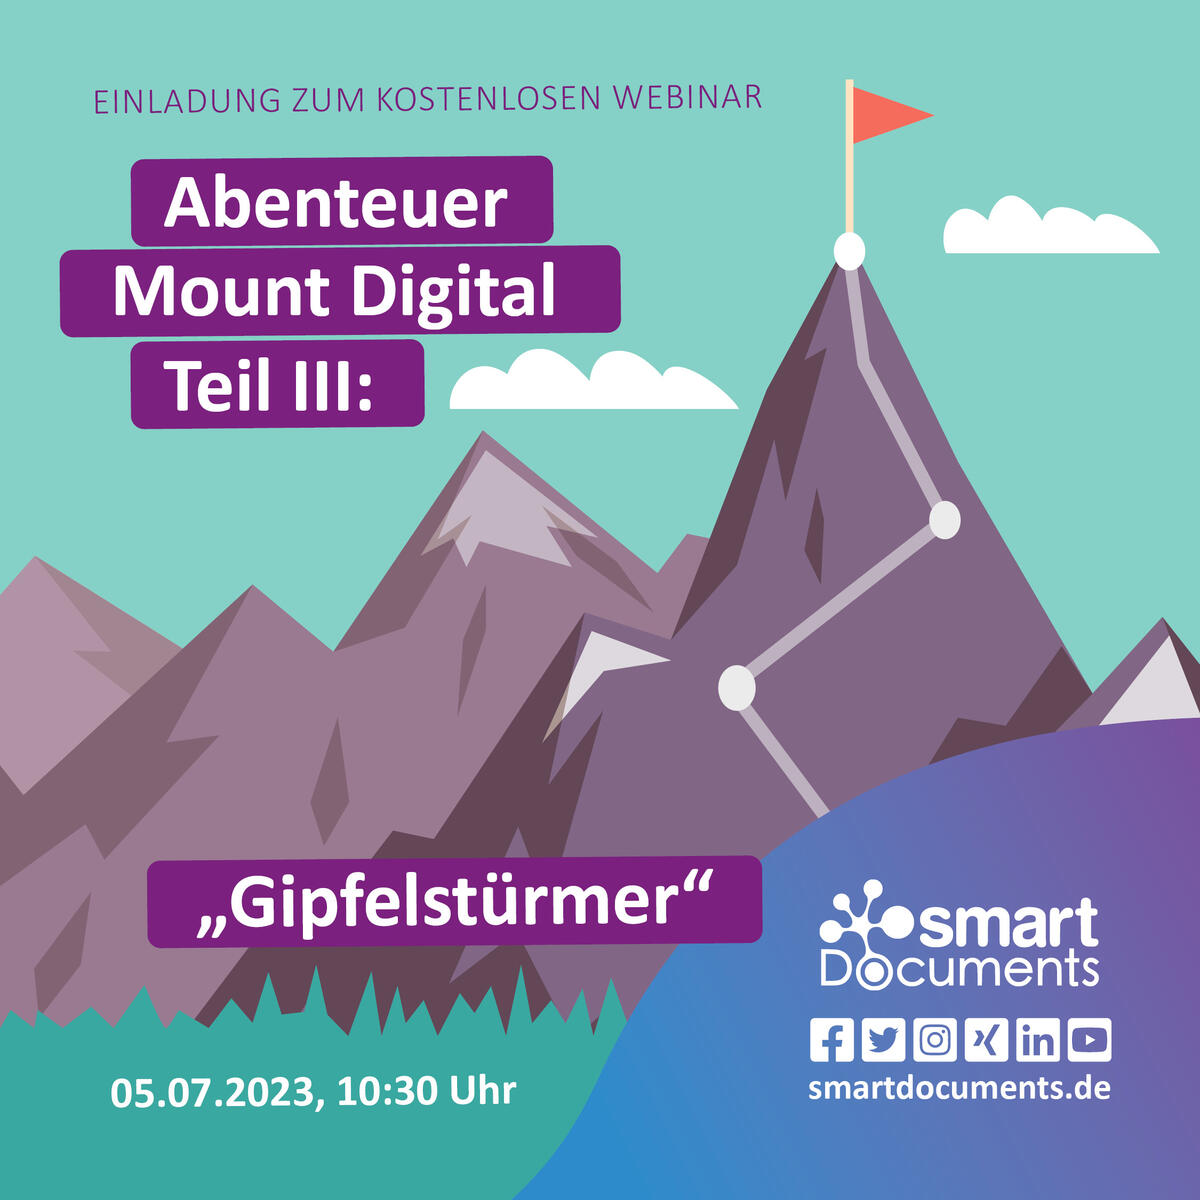 Wir laden Sie herzlich ein zu unserem kostenlosen Webinar: Abenteuer Mount Digital Teil III "Gipfelstürmer". Wann? am 04.07.2023 um 10:30 Uhr